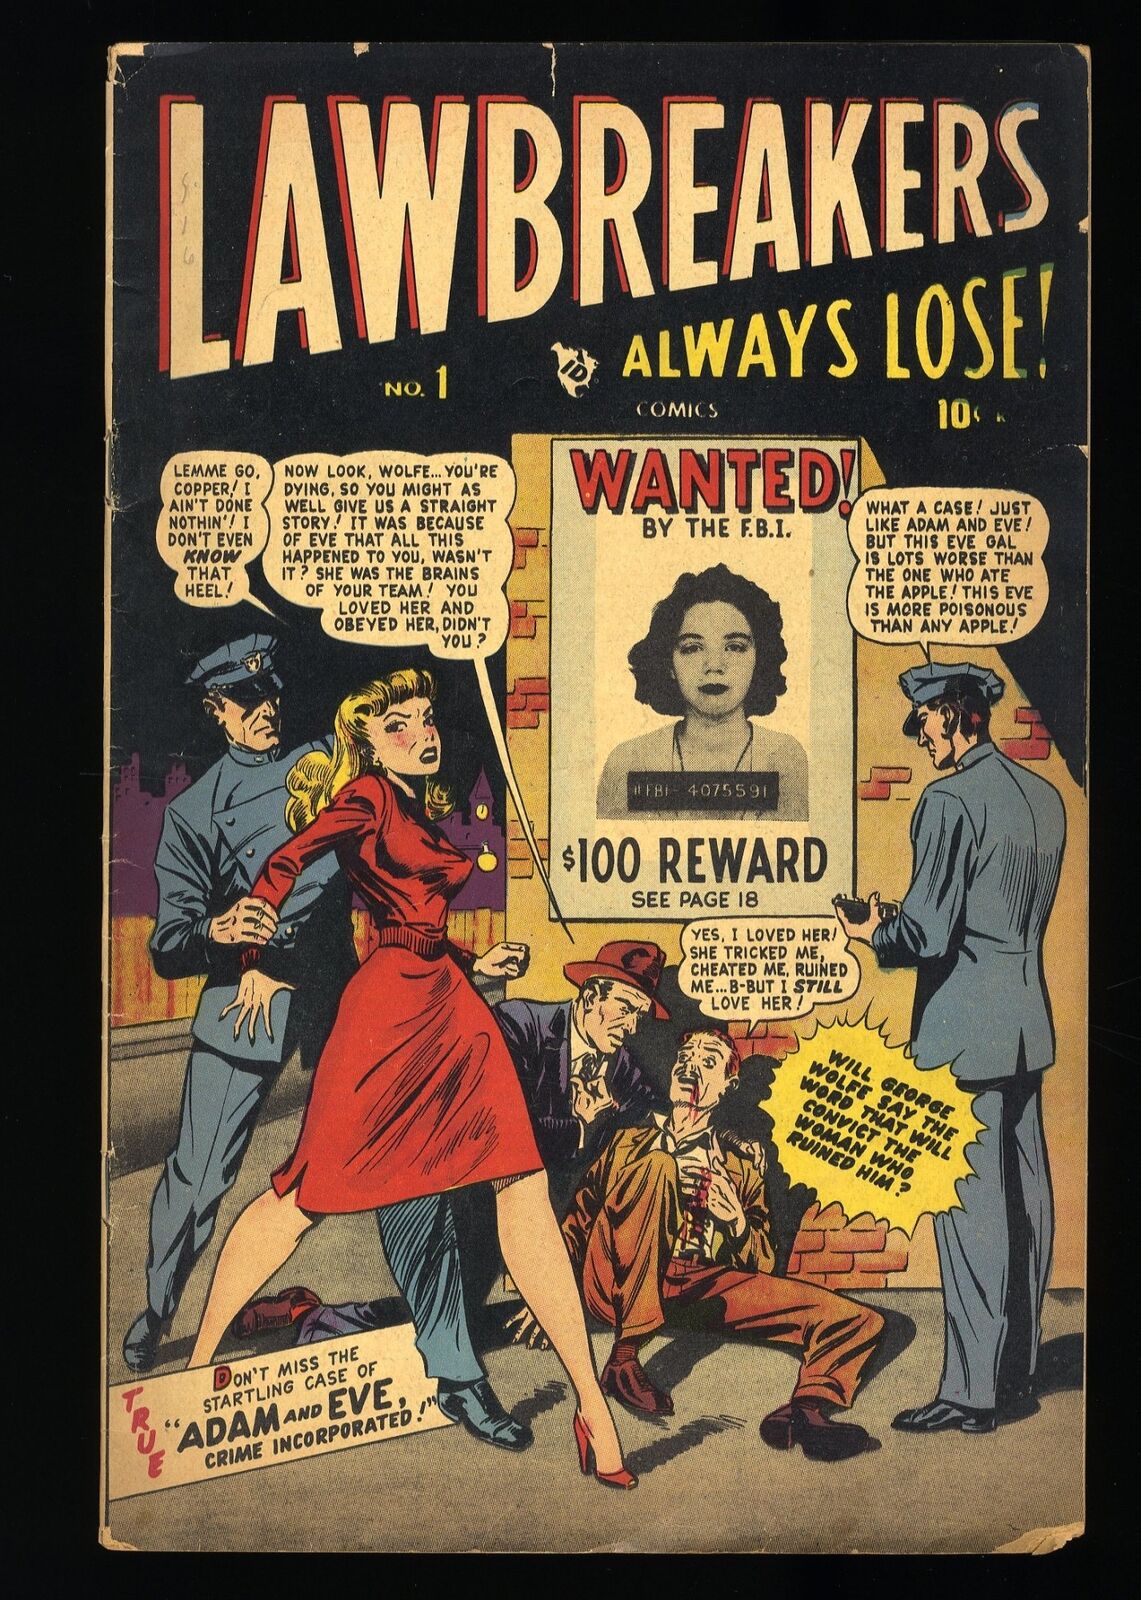 Lawbreakers Always Lose #1 VG+ 4.5 Rare #1 Crime Comic from 1947 Atlas